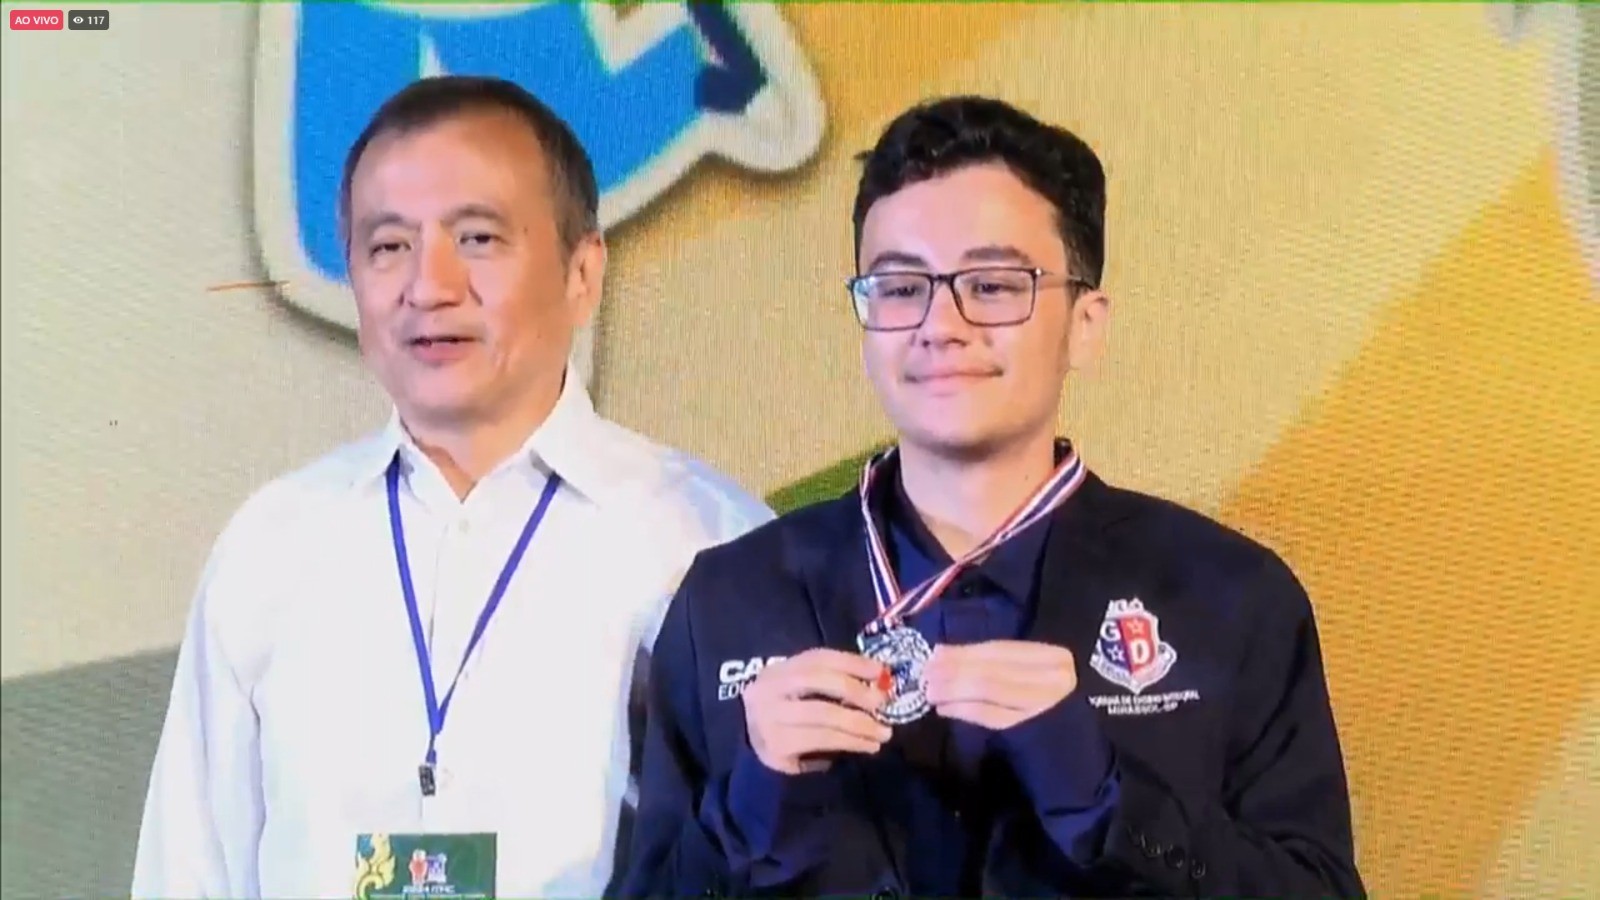 Aluno de escola pública conquista medalha de prata em olimpíada internacional de matemática na Tailândia: 'Concretização do sonho'